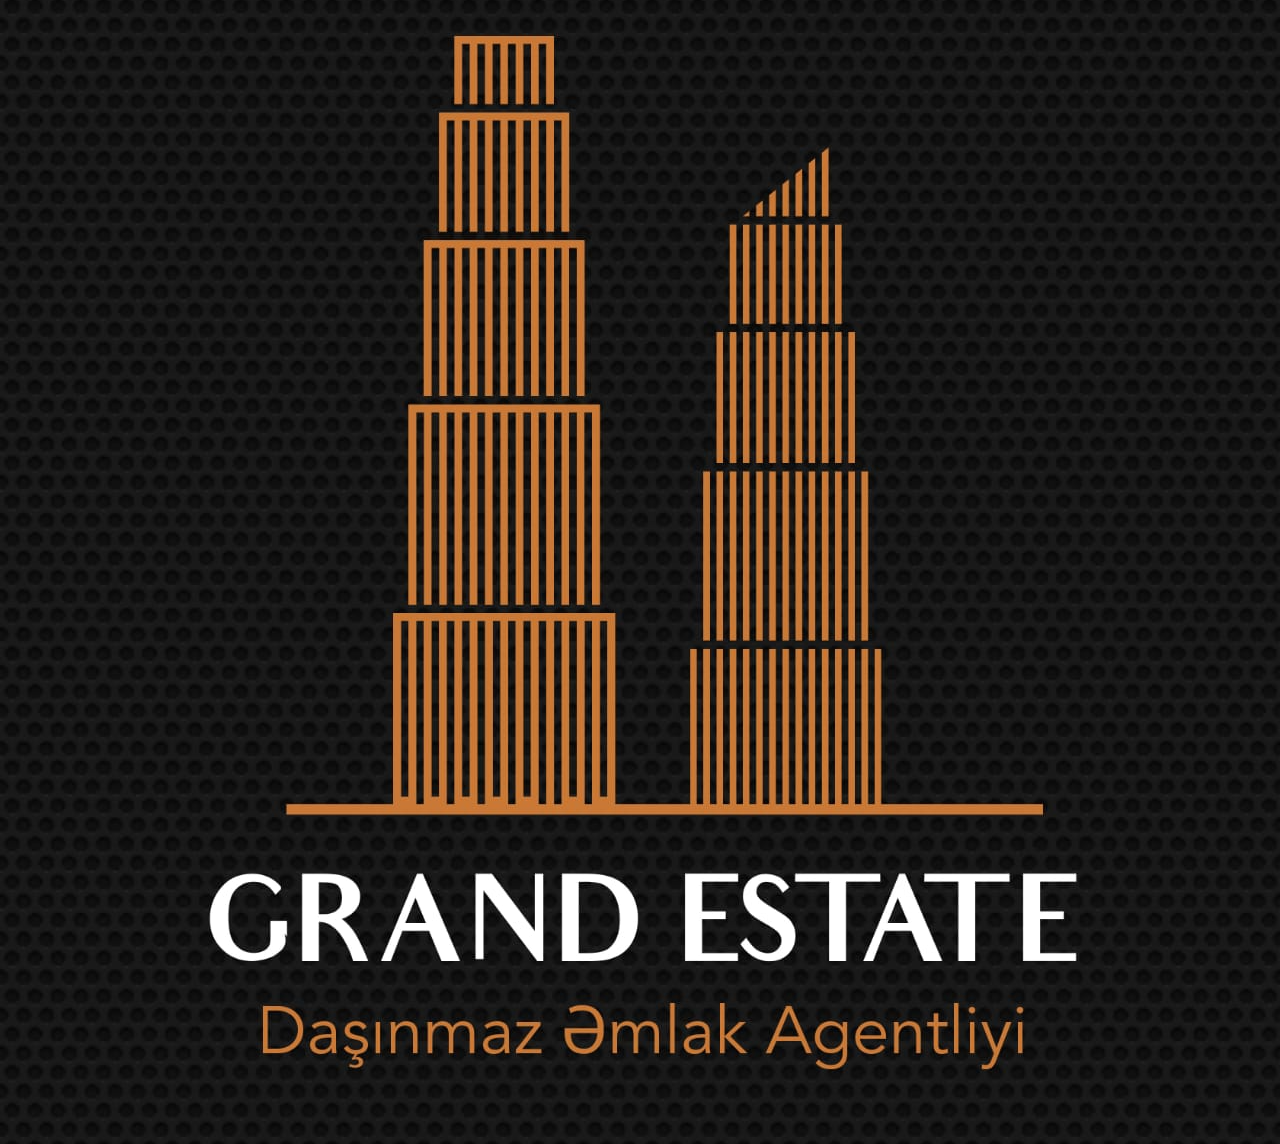 Grand Estate Daşınmaz Əmlak Agentliyi